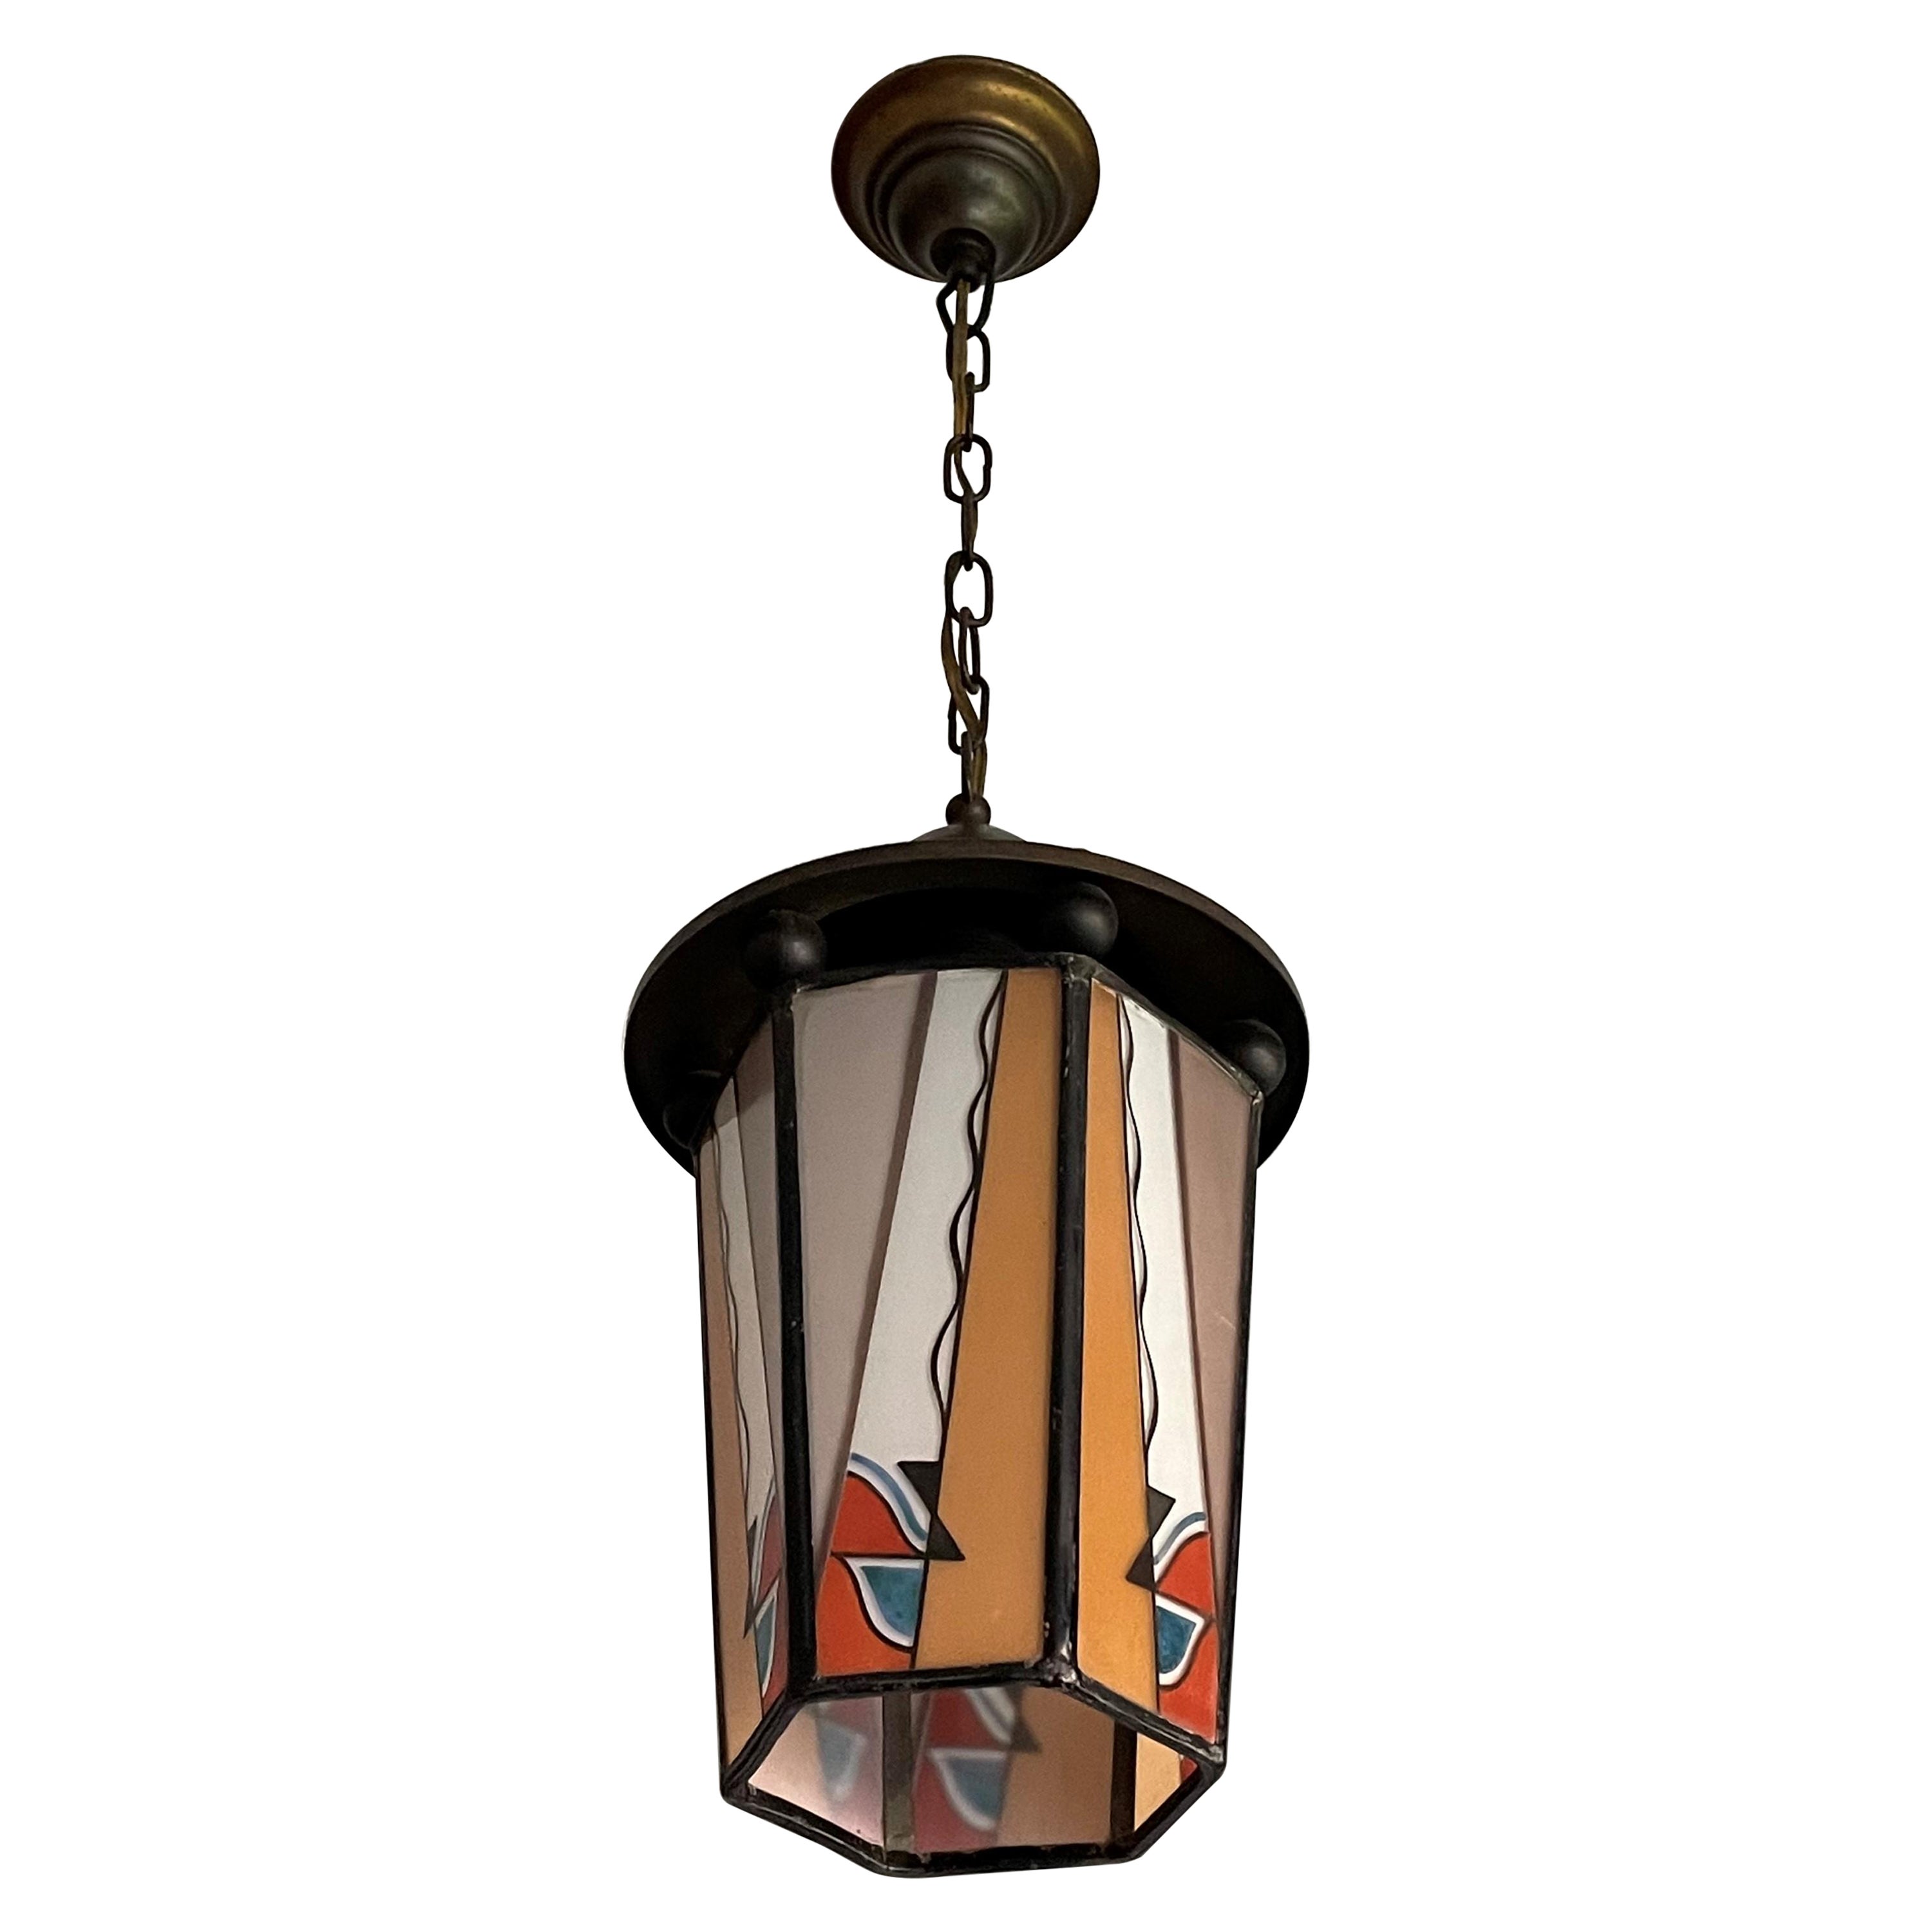 Lampe à suspension/lanterne hollandaise Arts & Crafts en laiton et verre opalin peint au feu